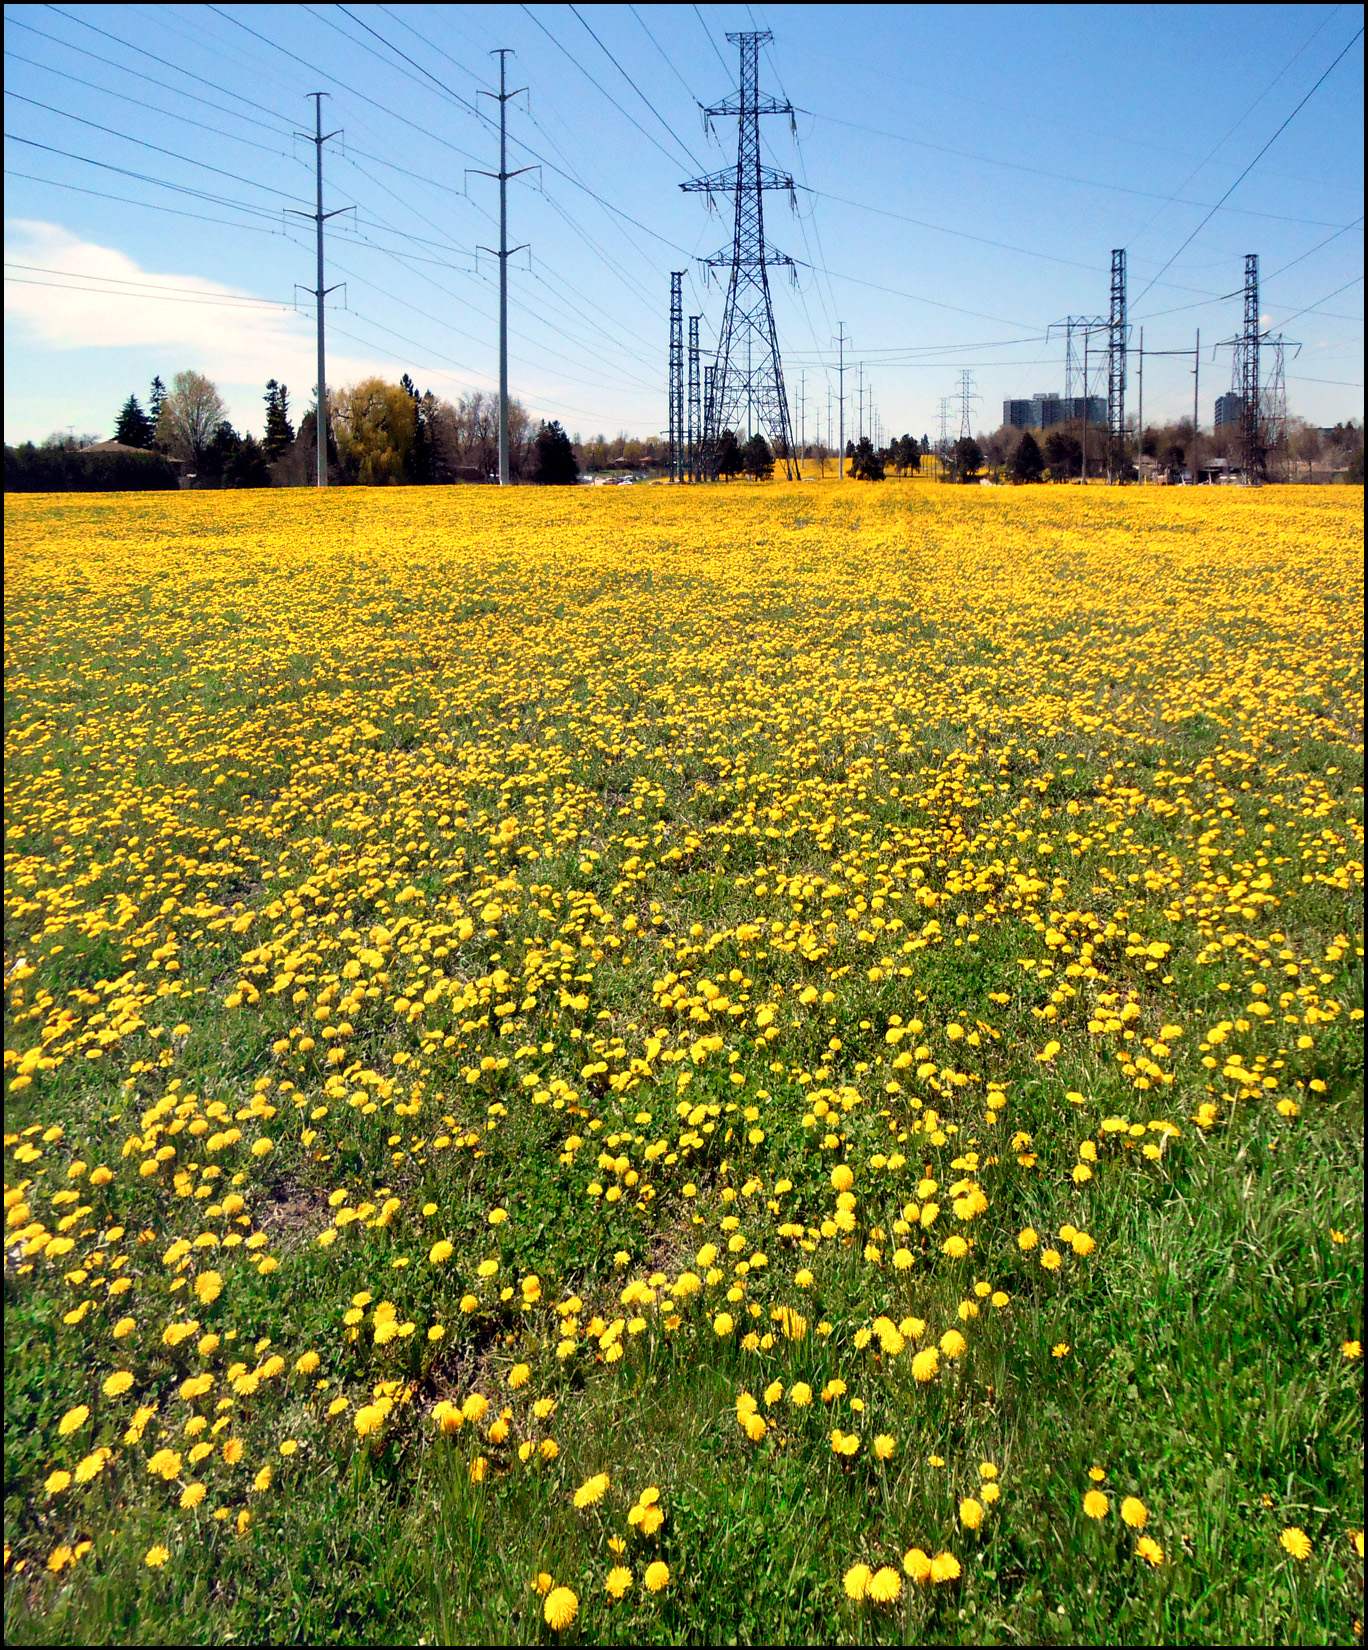 hydro field of dandelions.jpg